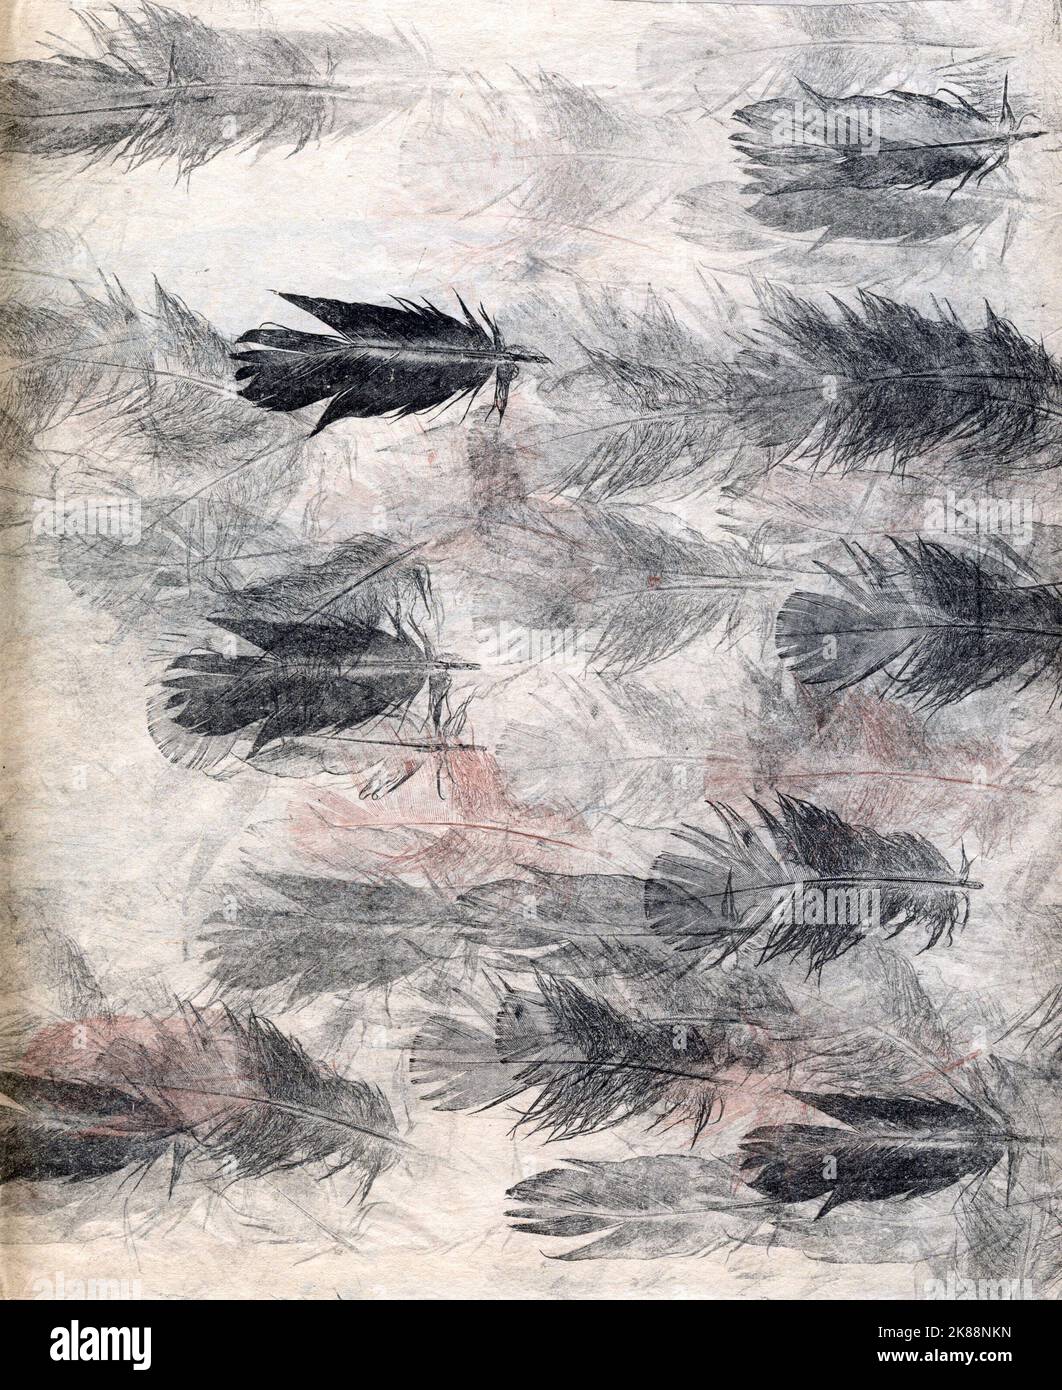 Dessin de craie des plumes d'oiseau de série arrangé dans un presque abstrait coloré montage costume livre couverture magazine éditorial ornithologie birding Banque D'Images